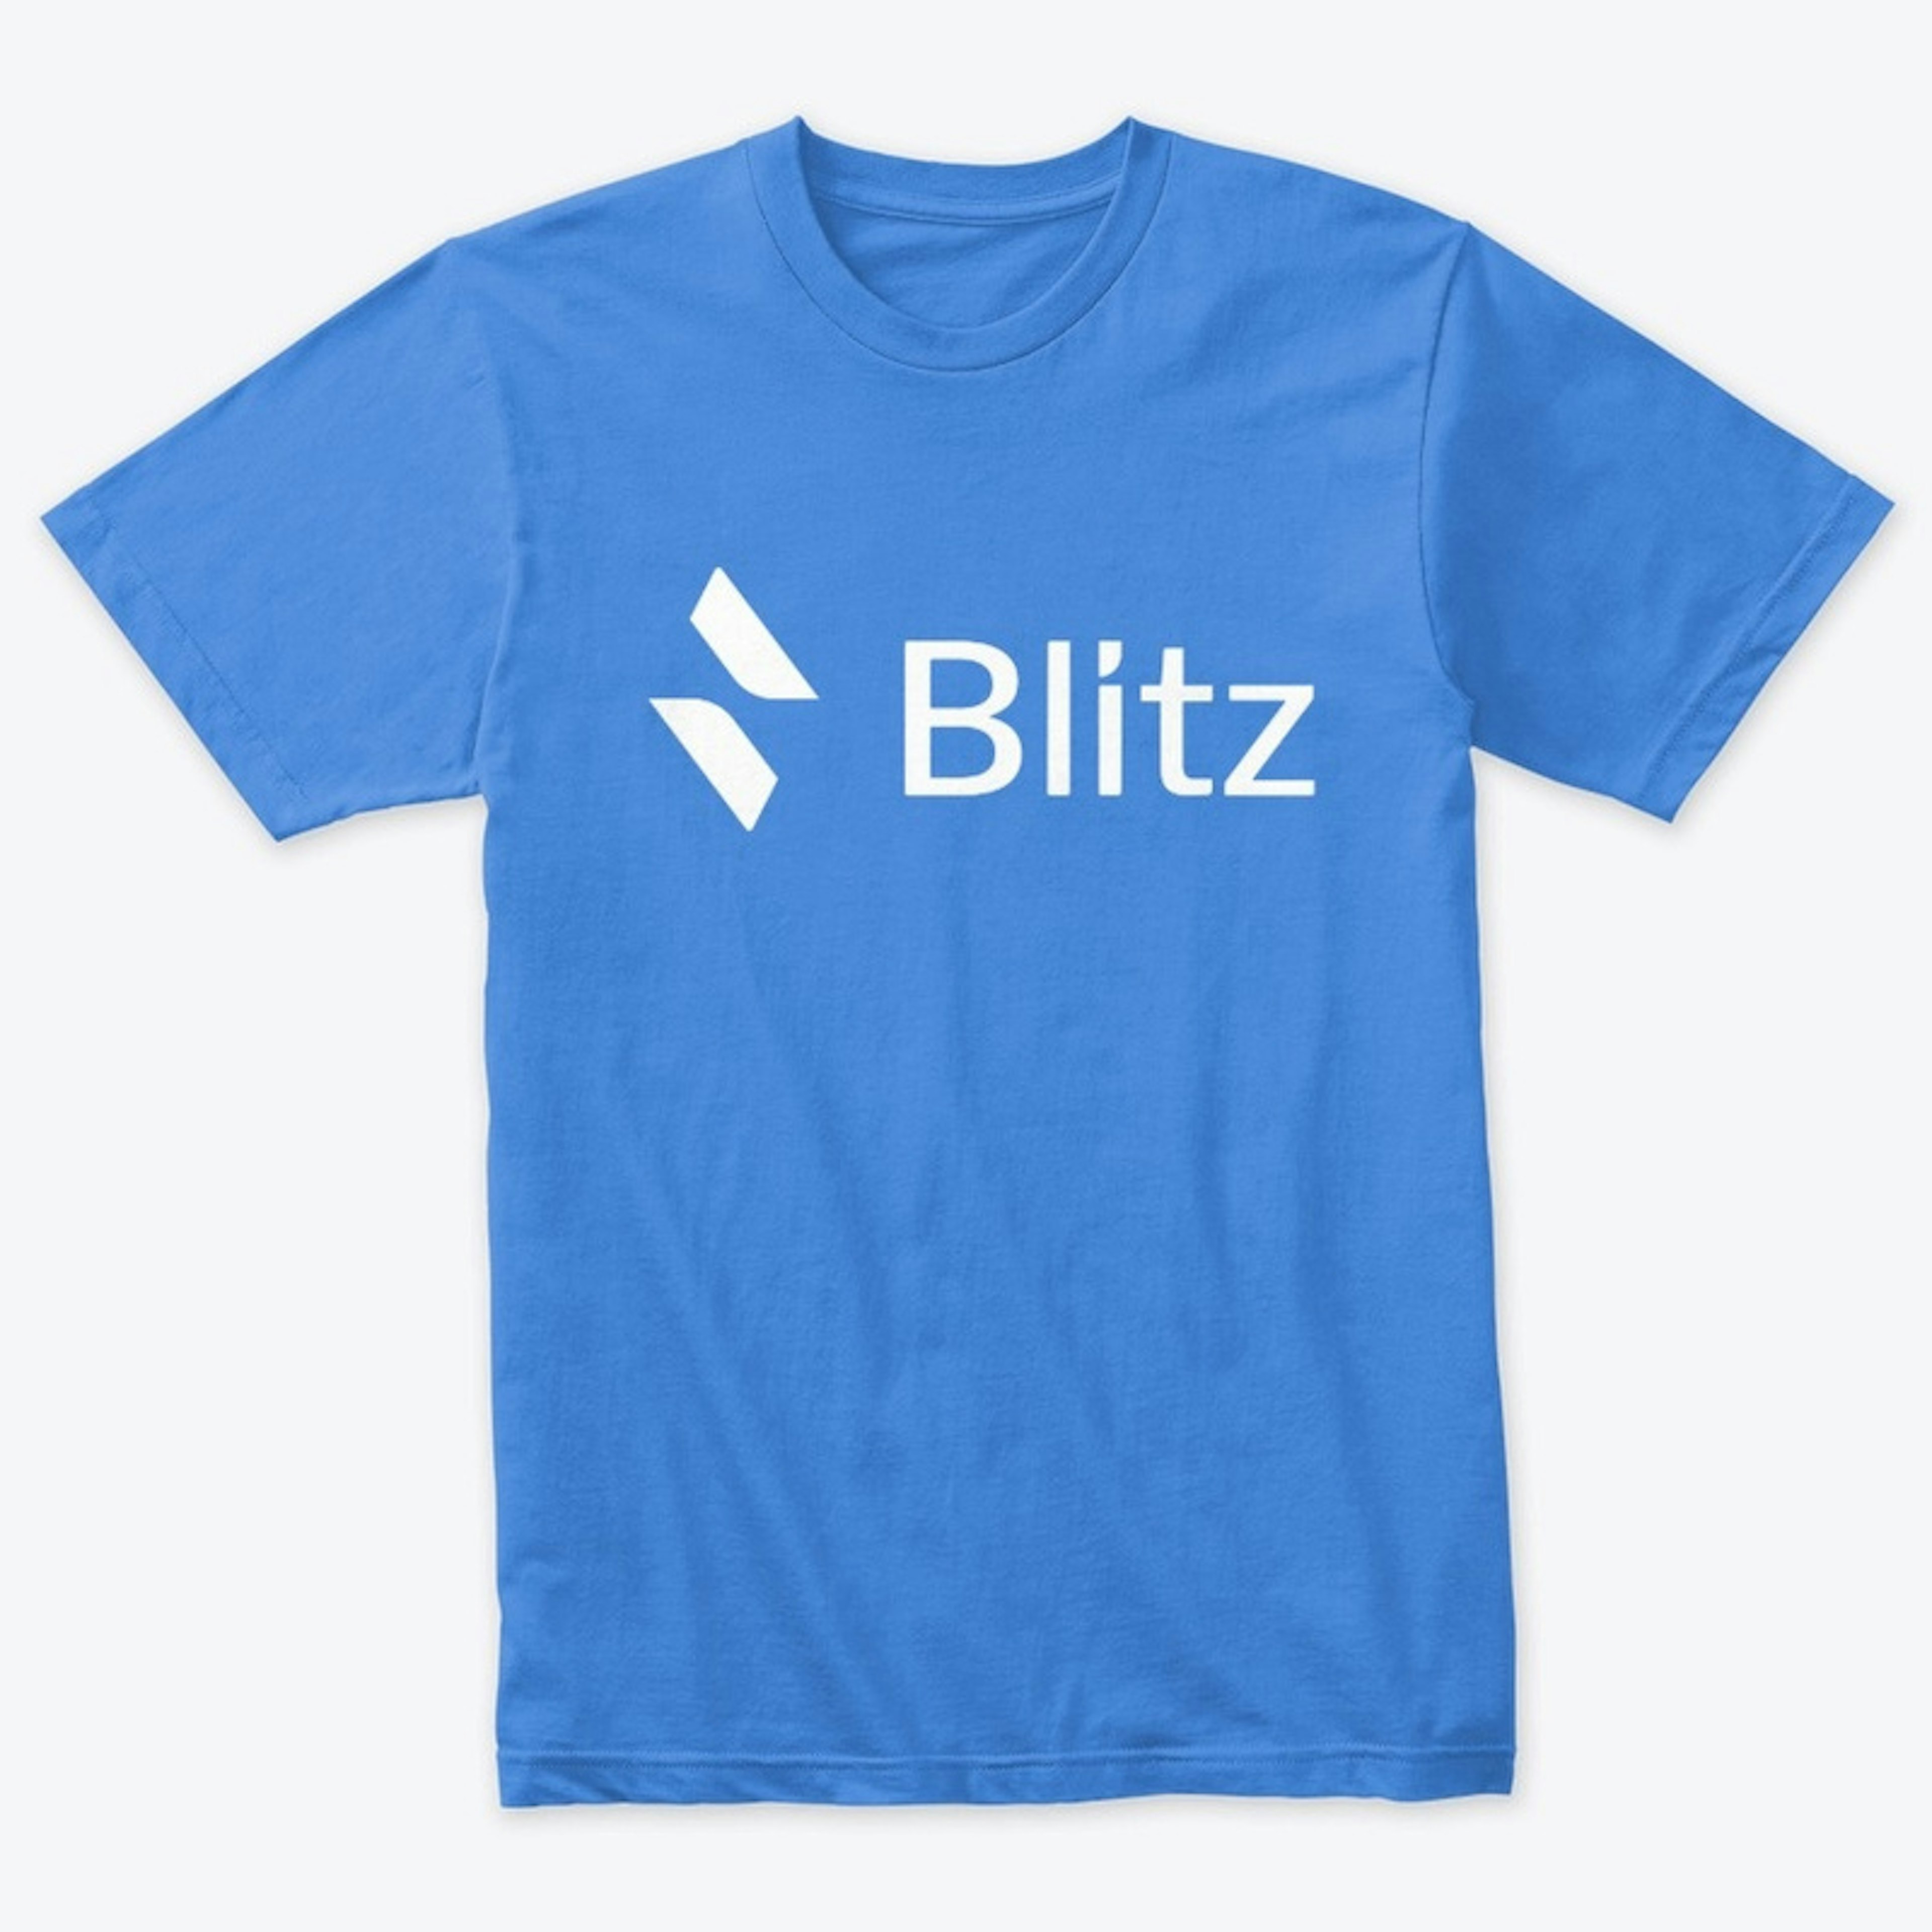 Blitz Full Logo on Color